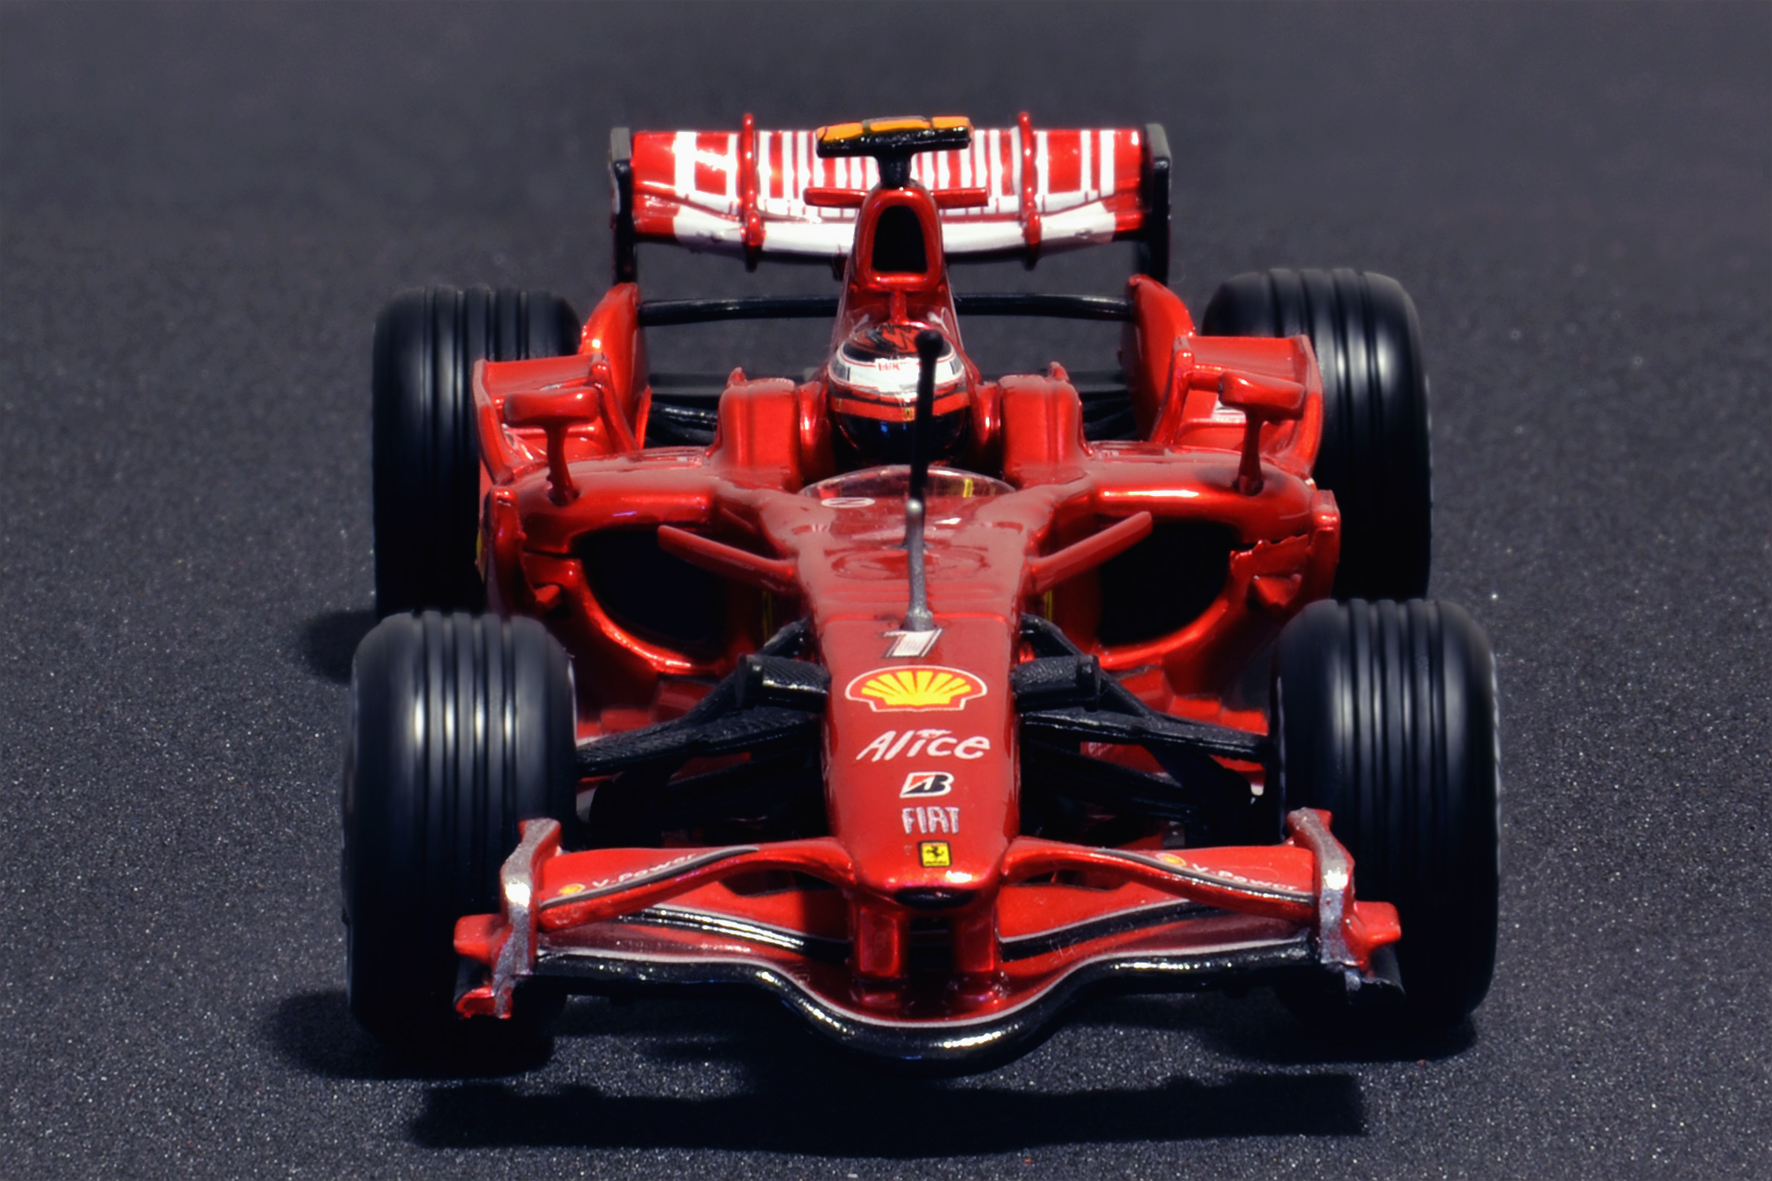 Ferrari F2008 Kimi Räikkönen 2008 - Hot Wheels 1:43